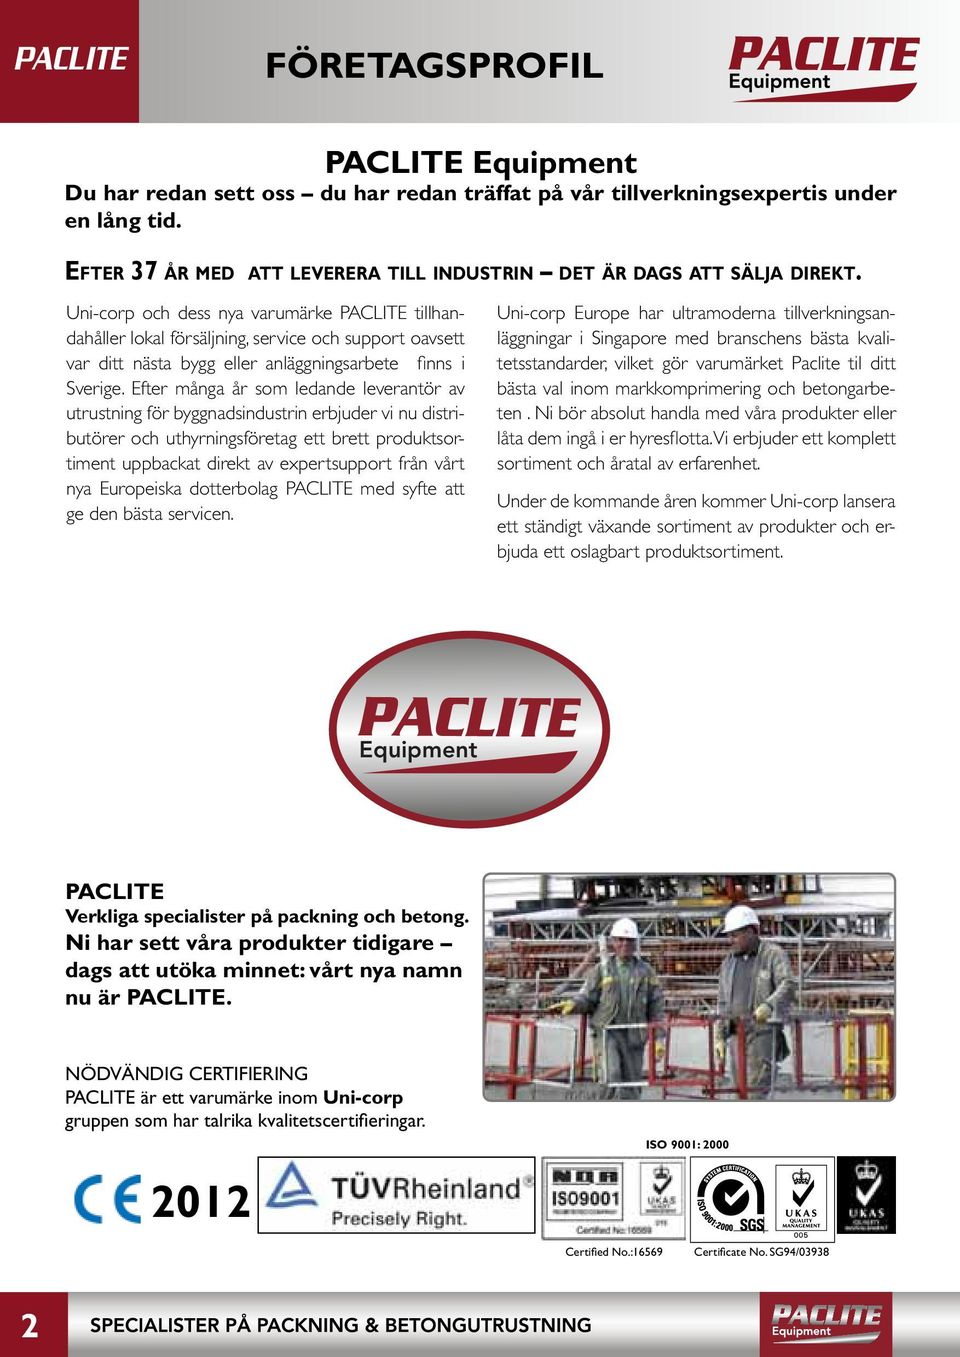 Uni-corp och dess nya varumärke PACLITE tillhandahåller lokal försäljning, service och support oavsett var ditt nästa bygg eller anläggningsarbete fi nns i Sverige.